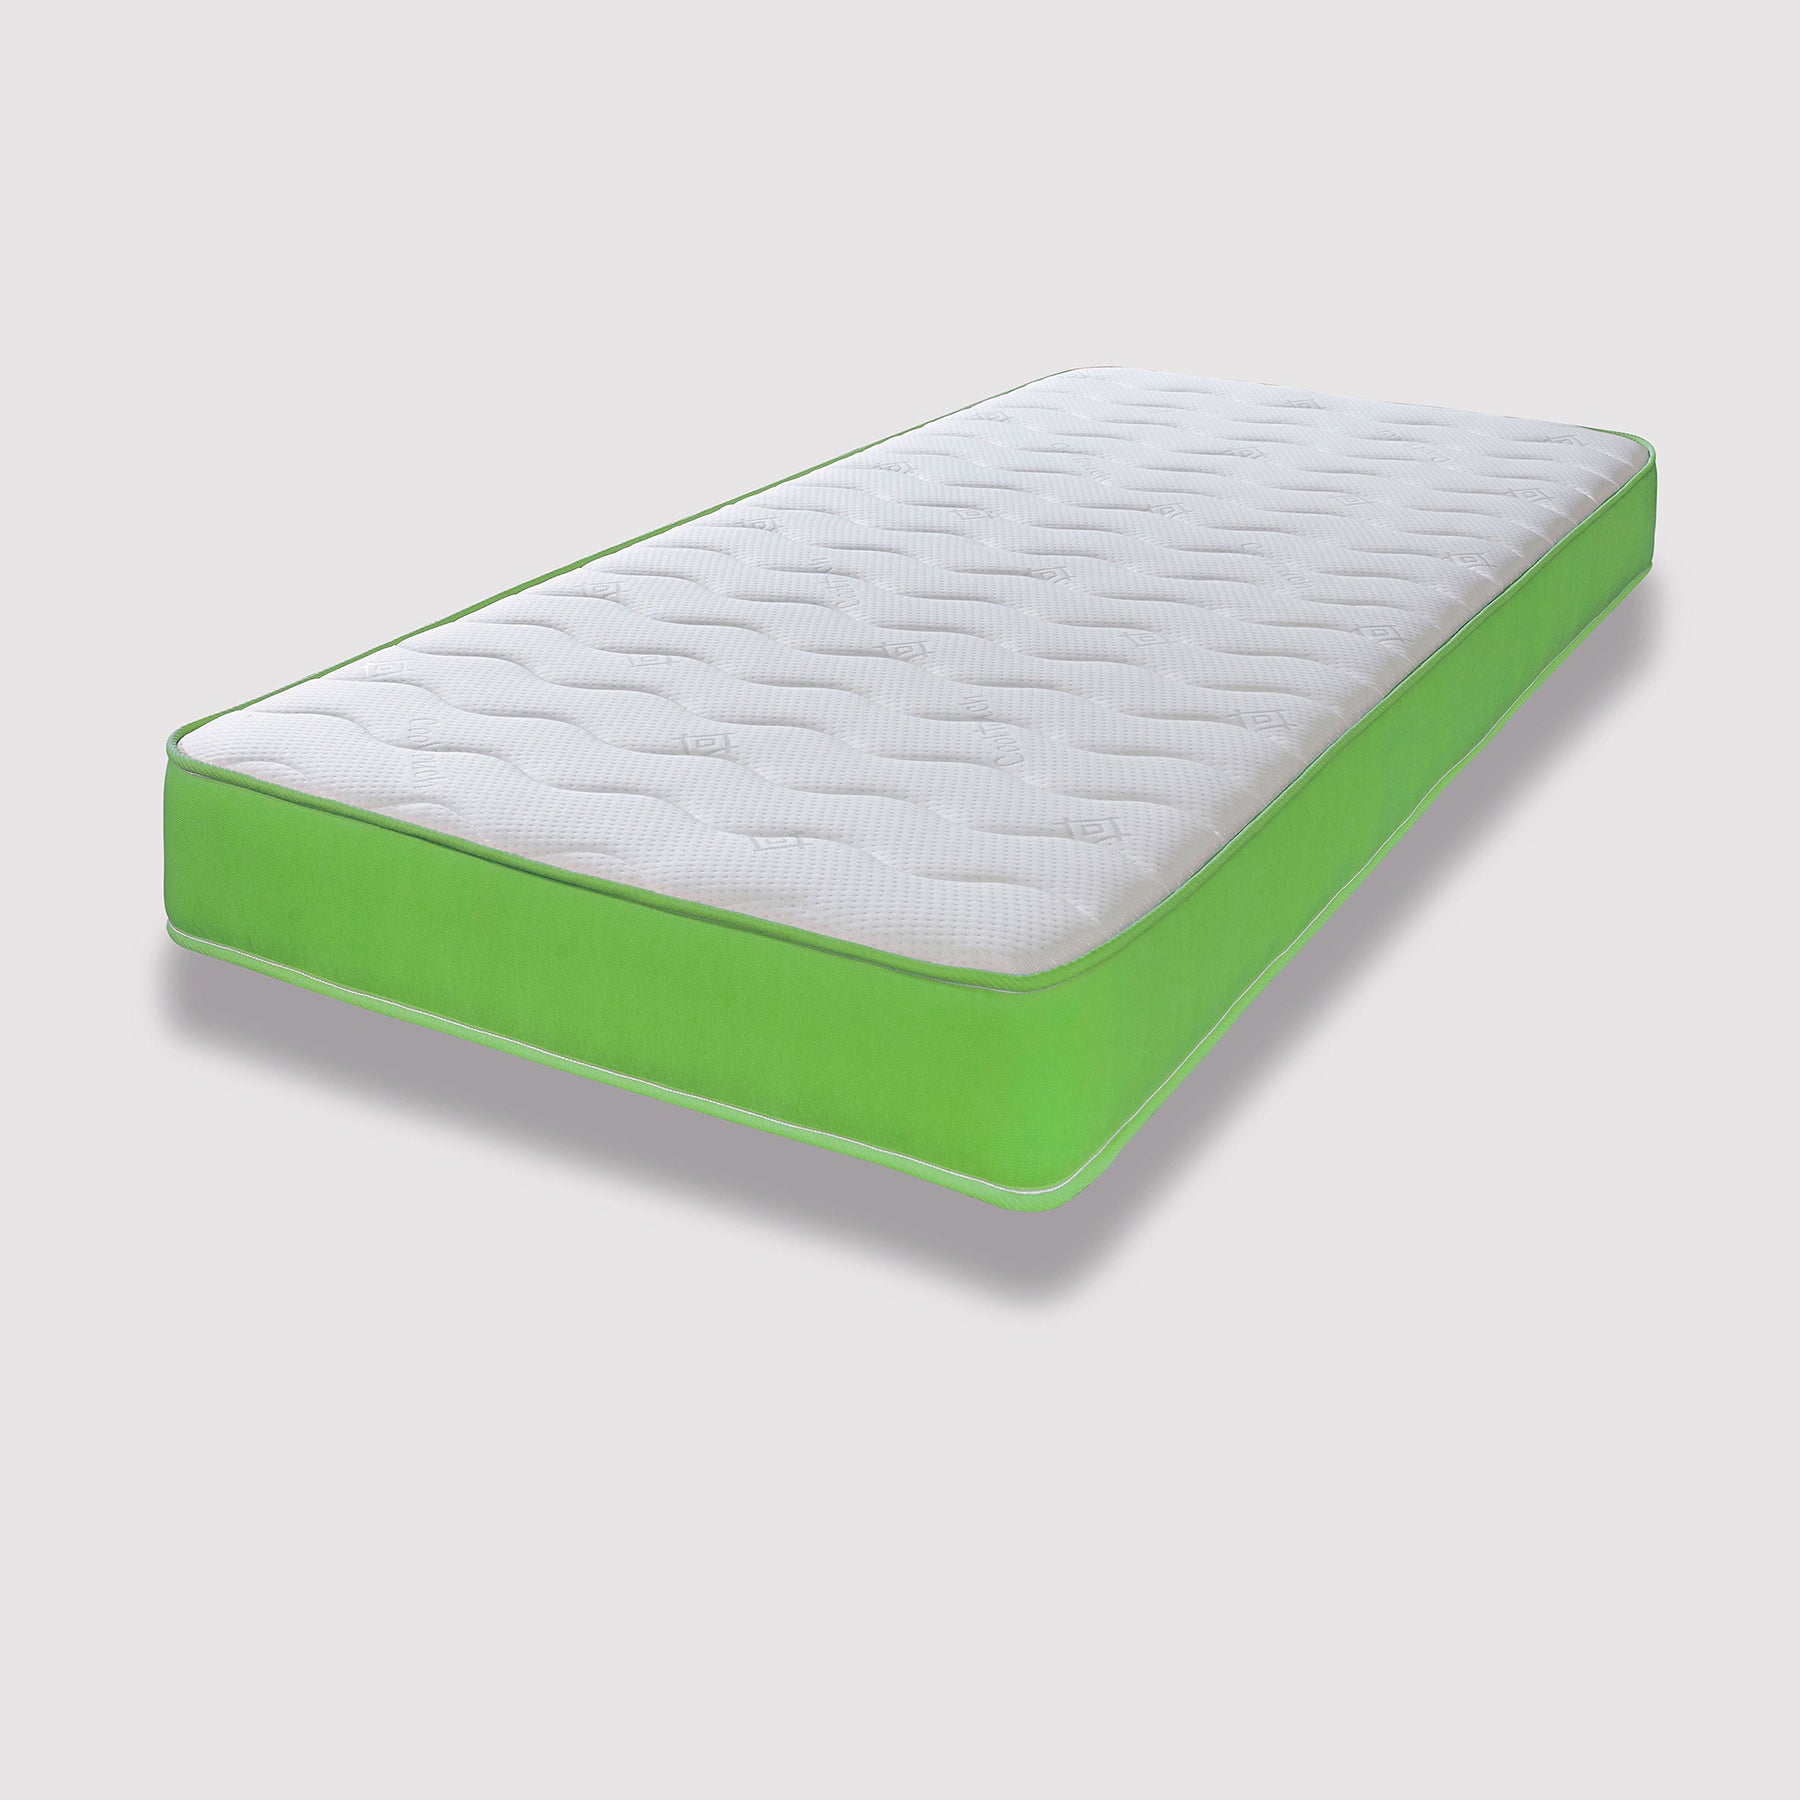 Starlight Beds™ 7" Deep Cool touch Luxurious soft Finish Memory Foam & Hybrid Spring Green Border Mattress